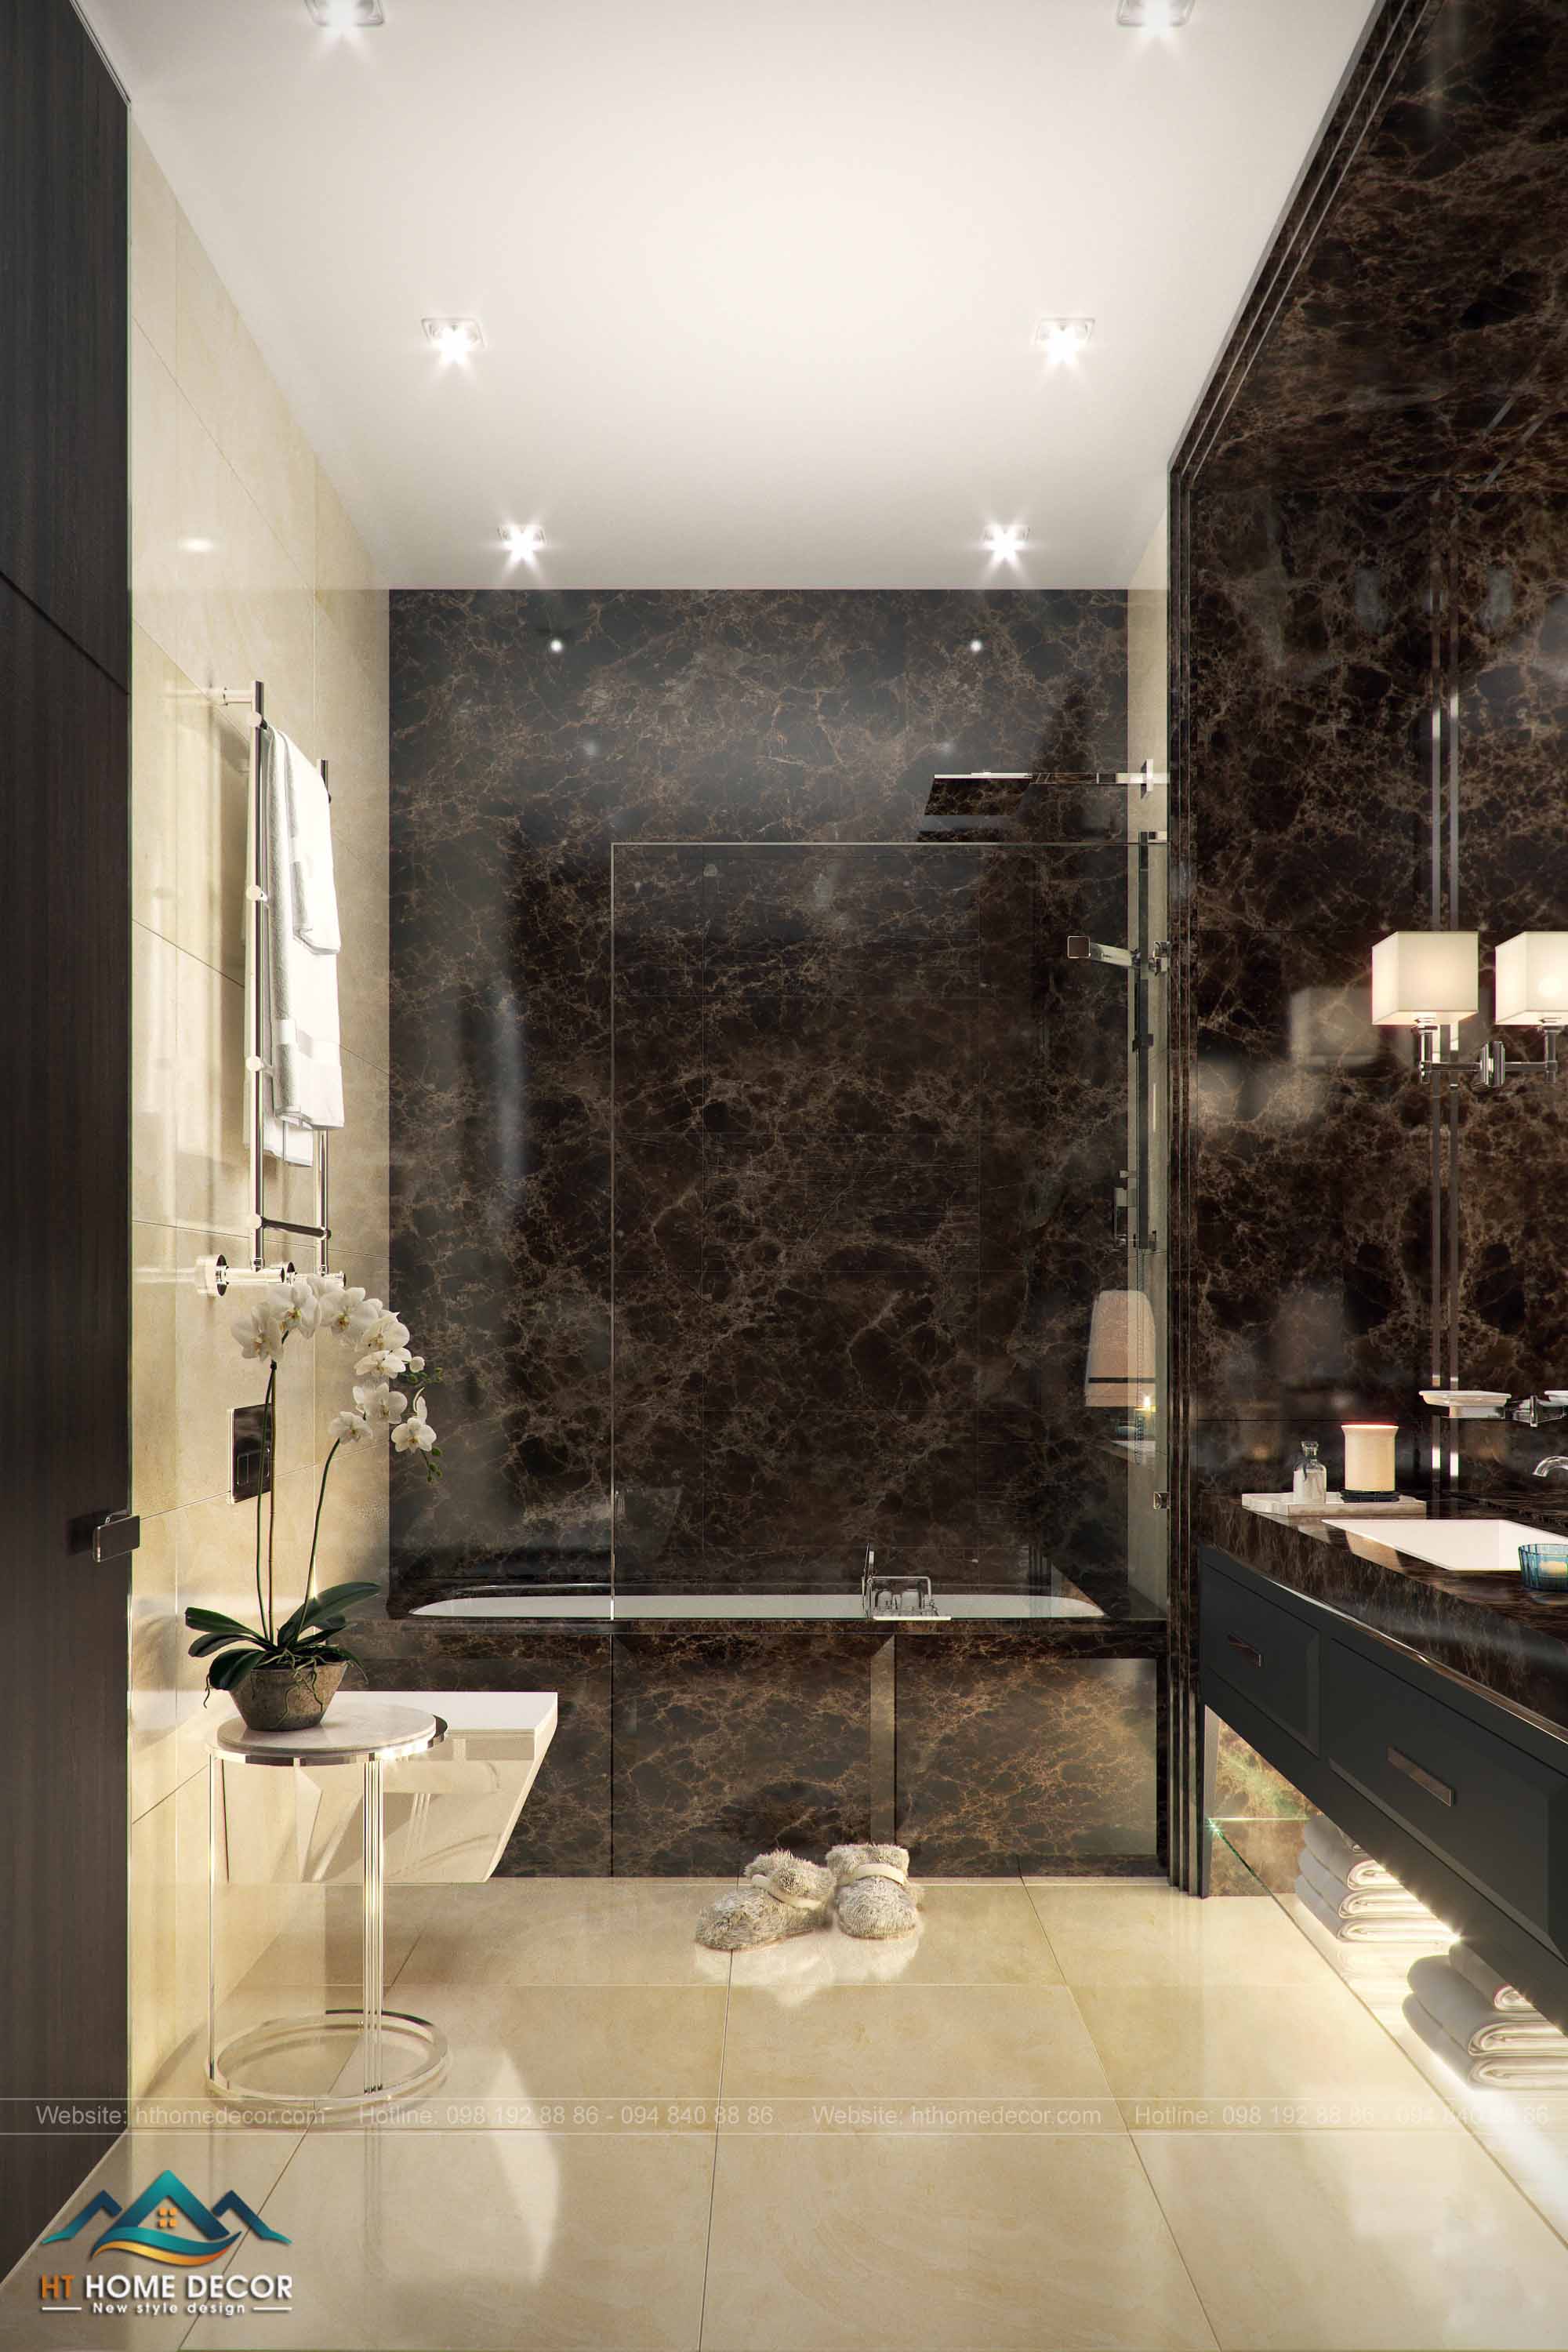 Phòng tắm ốp đá hoa cương lên tường. Cho cảm giác mát lạnh sạch sẽ. Bồn tắm được ngăn với bên ngoài bằng phông kính đảm bảo sự riêng tư.